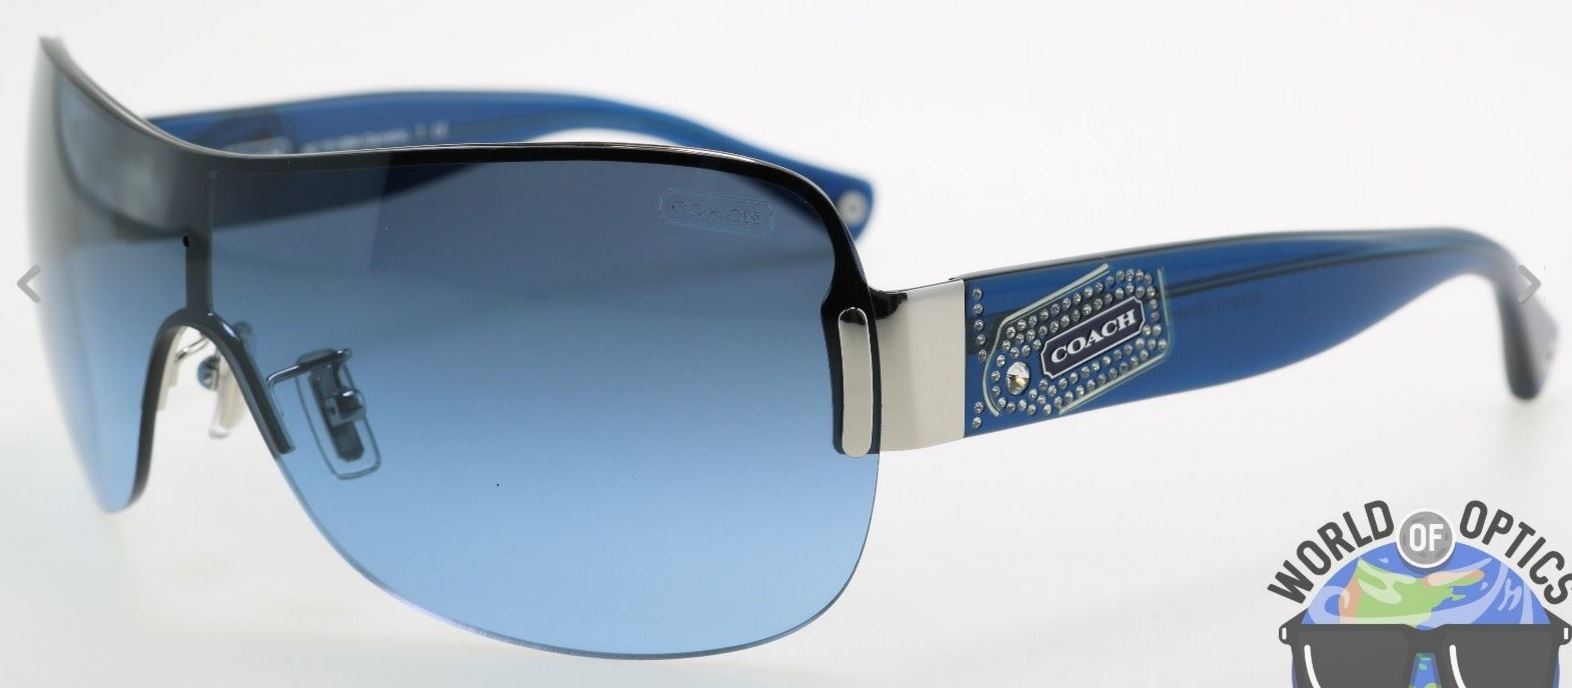 Coach Sunglasses - Luxury Designerware Sunglasses